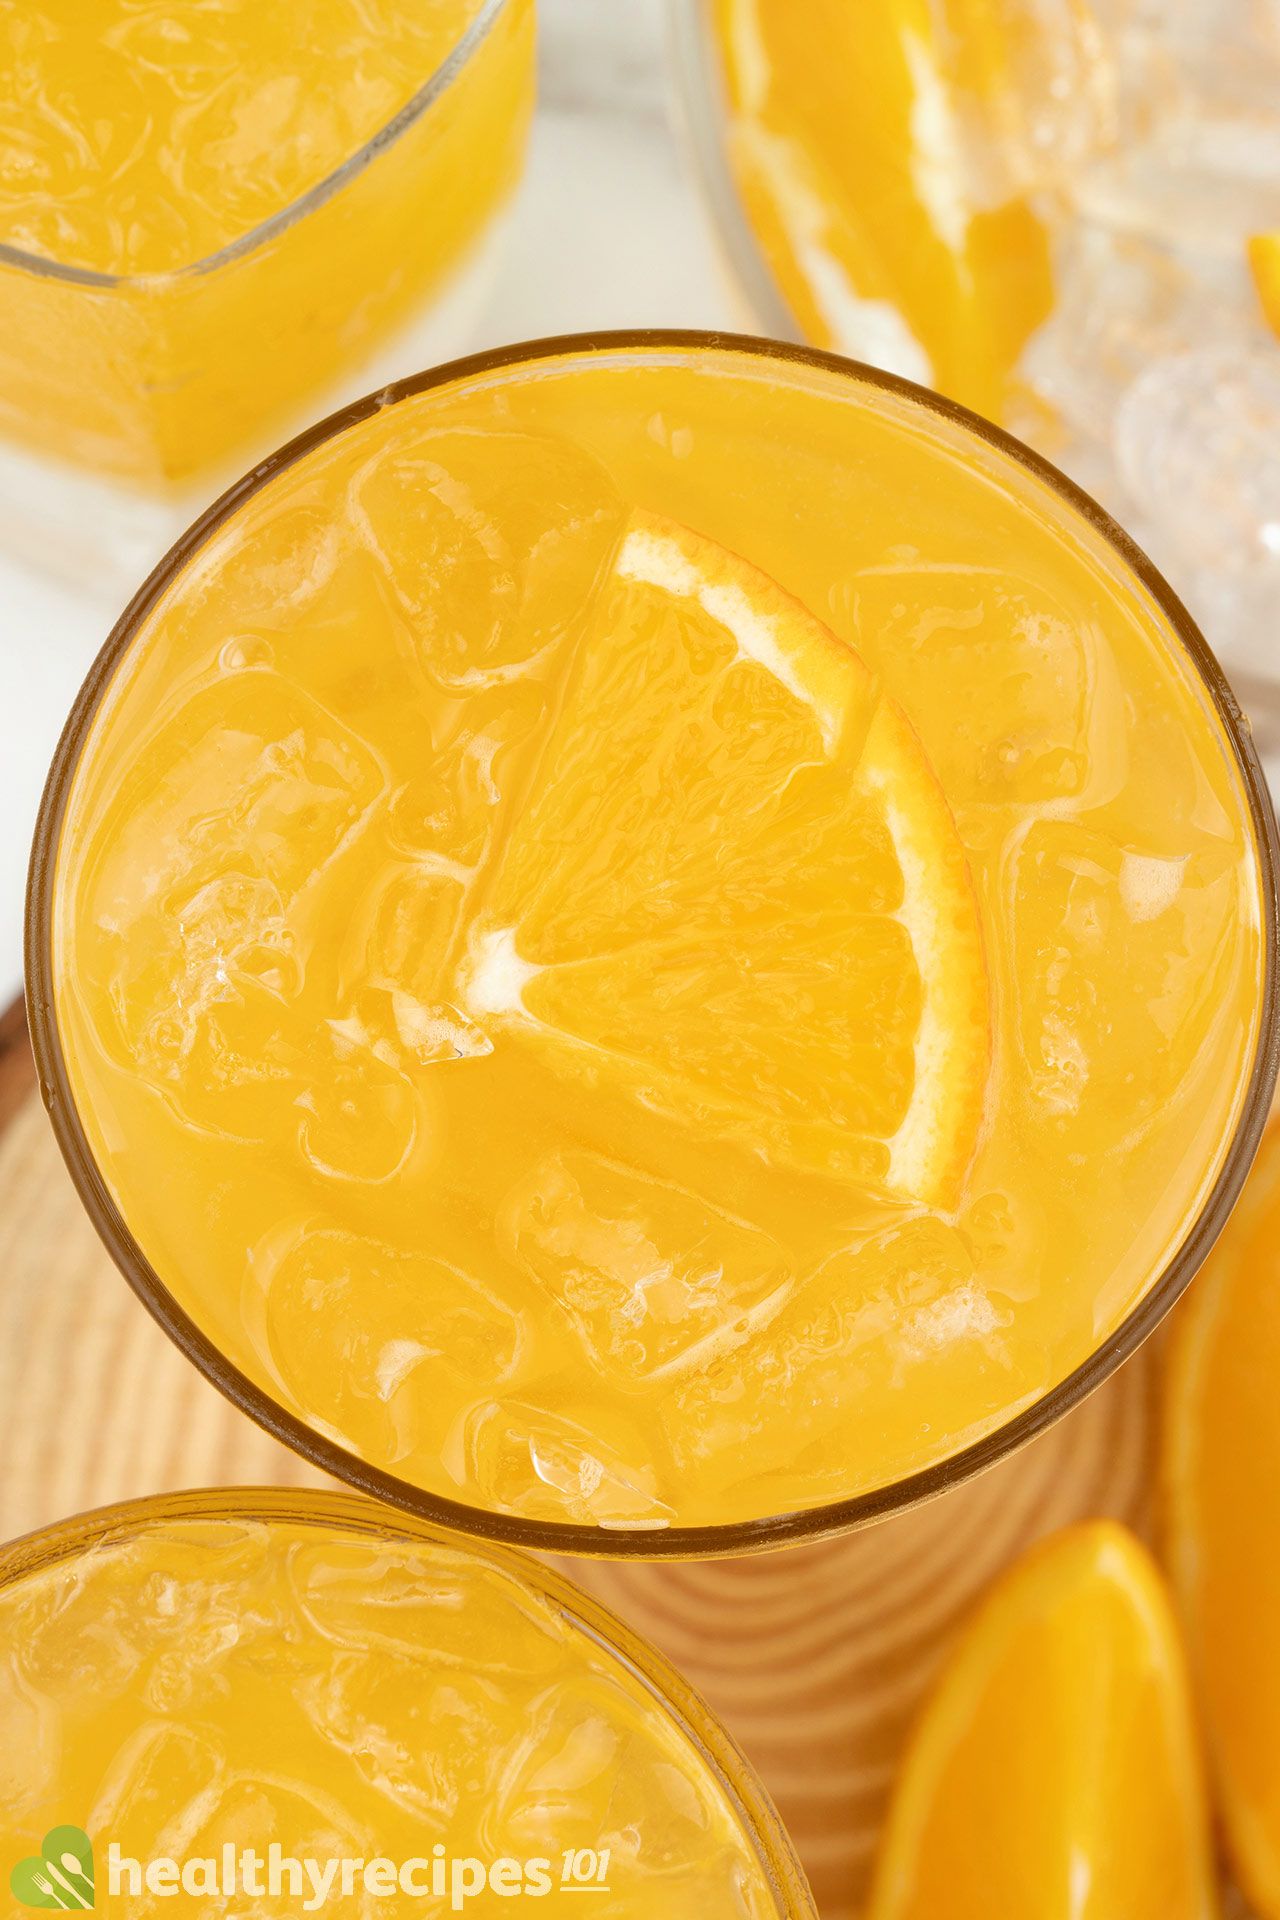 homemade Simply Orange Juice Recipe